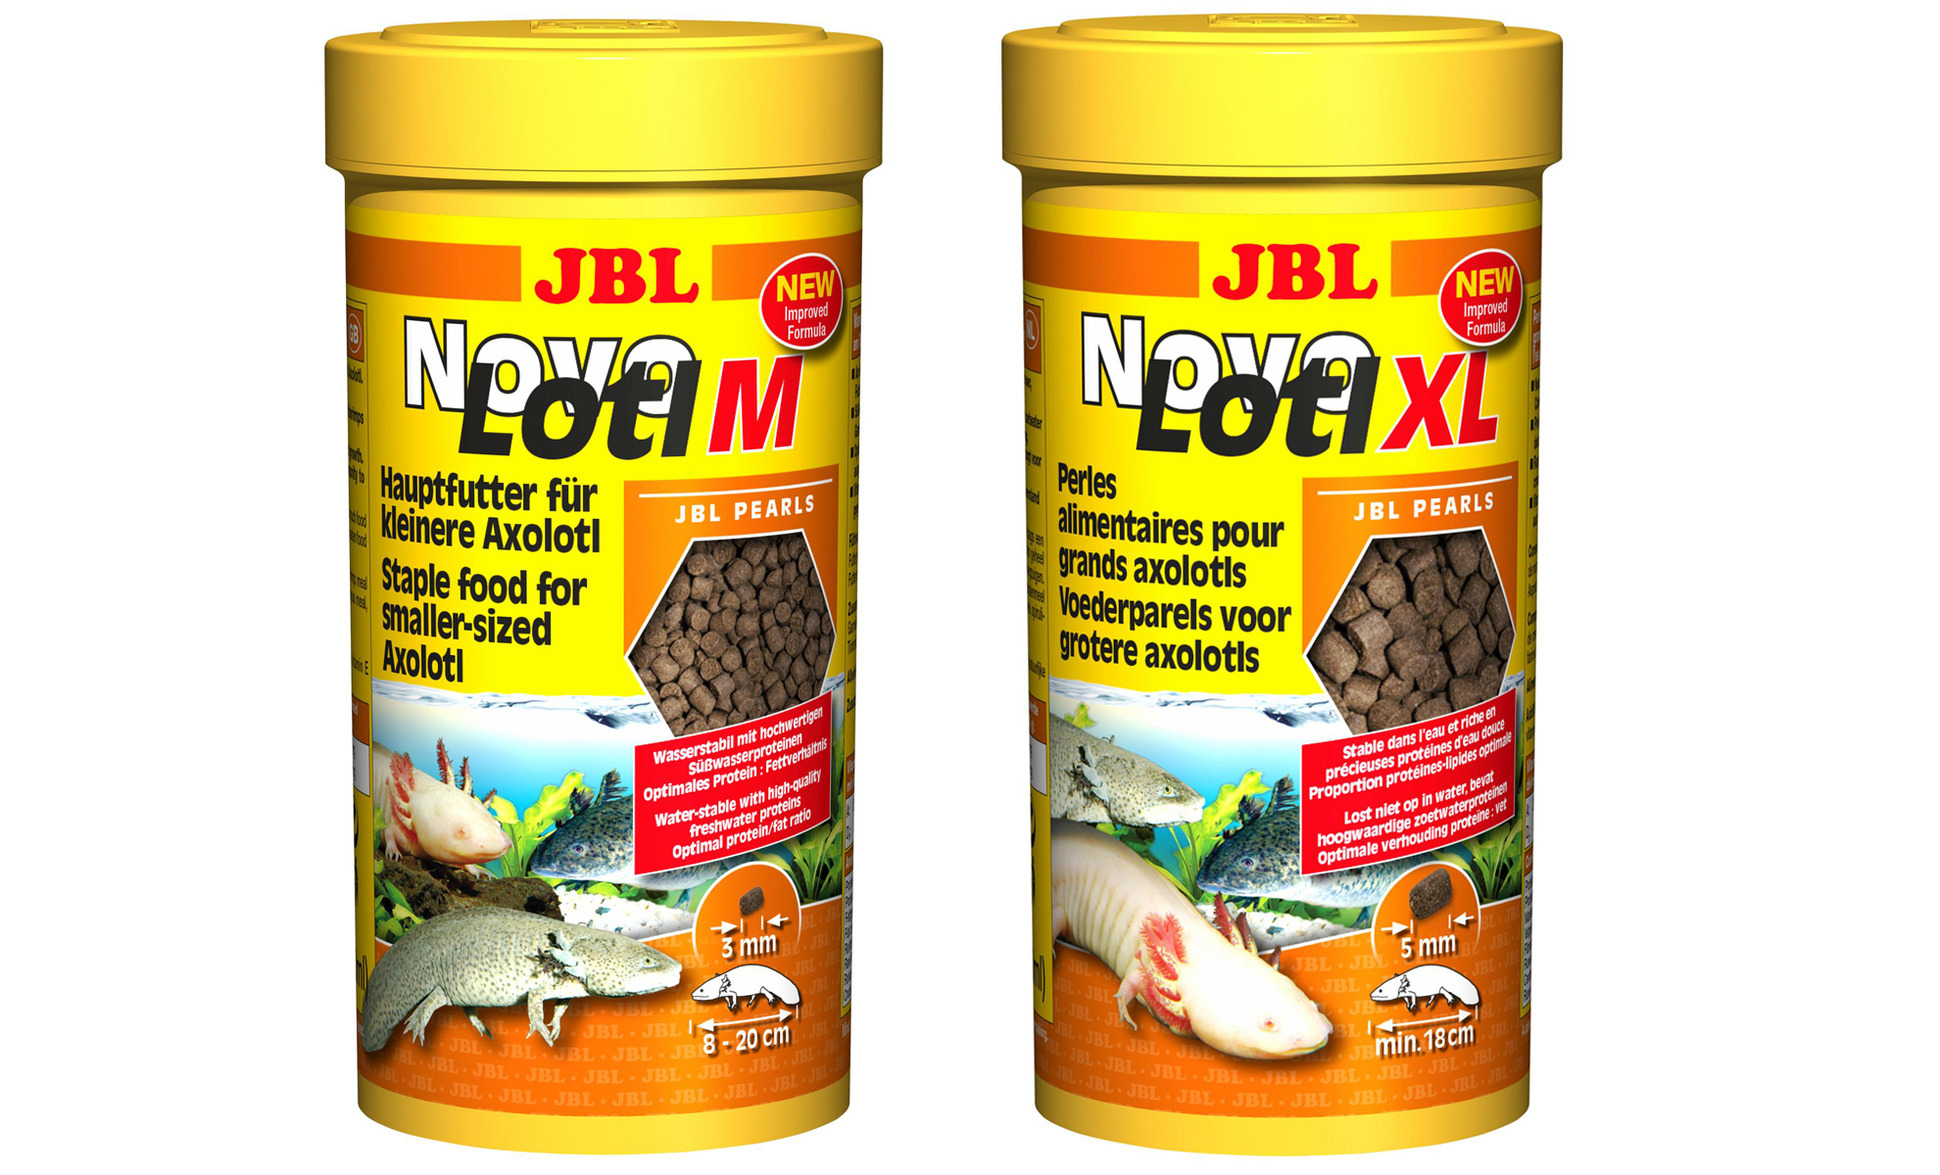 Axolotl - Alles zur erfolgreichen Zucht und Haltung - JBL Nitrit